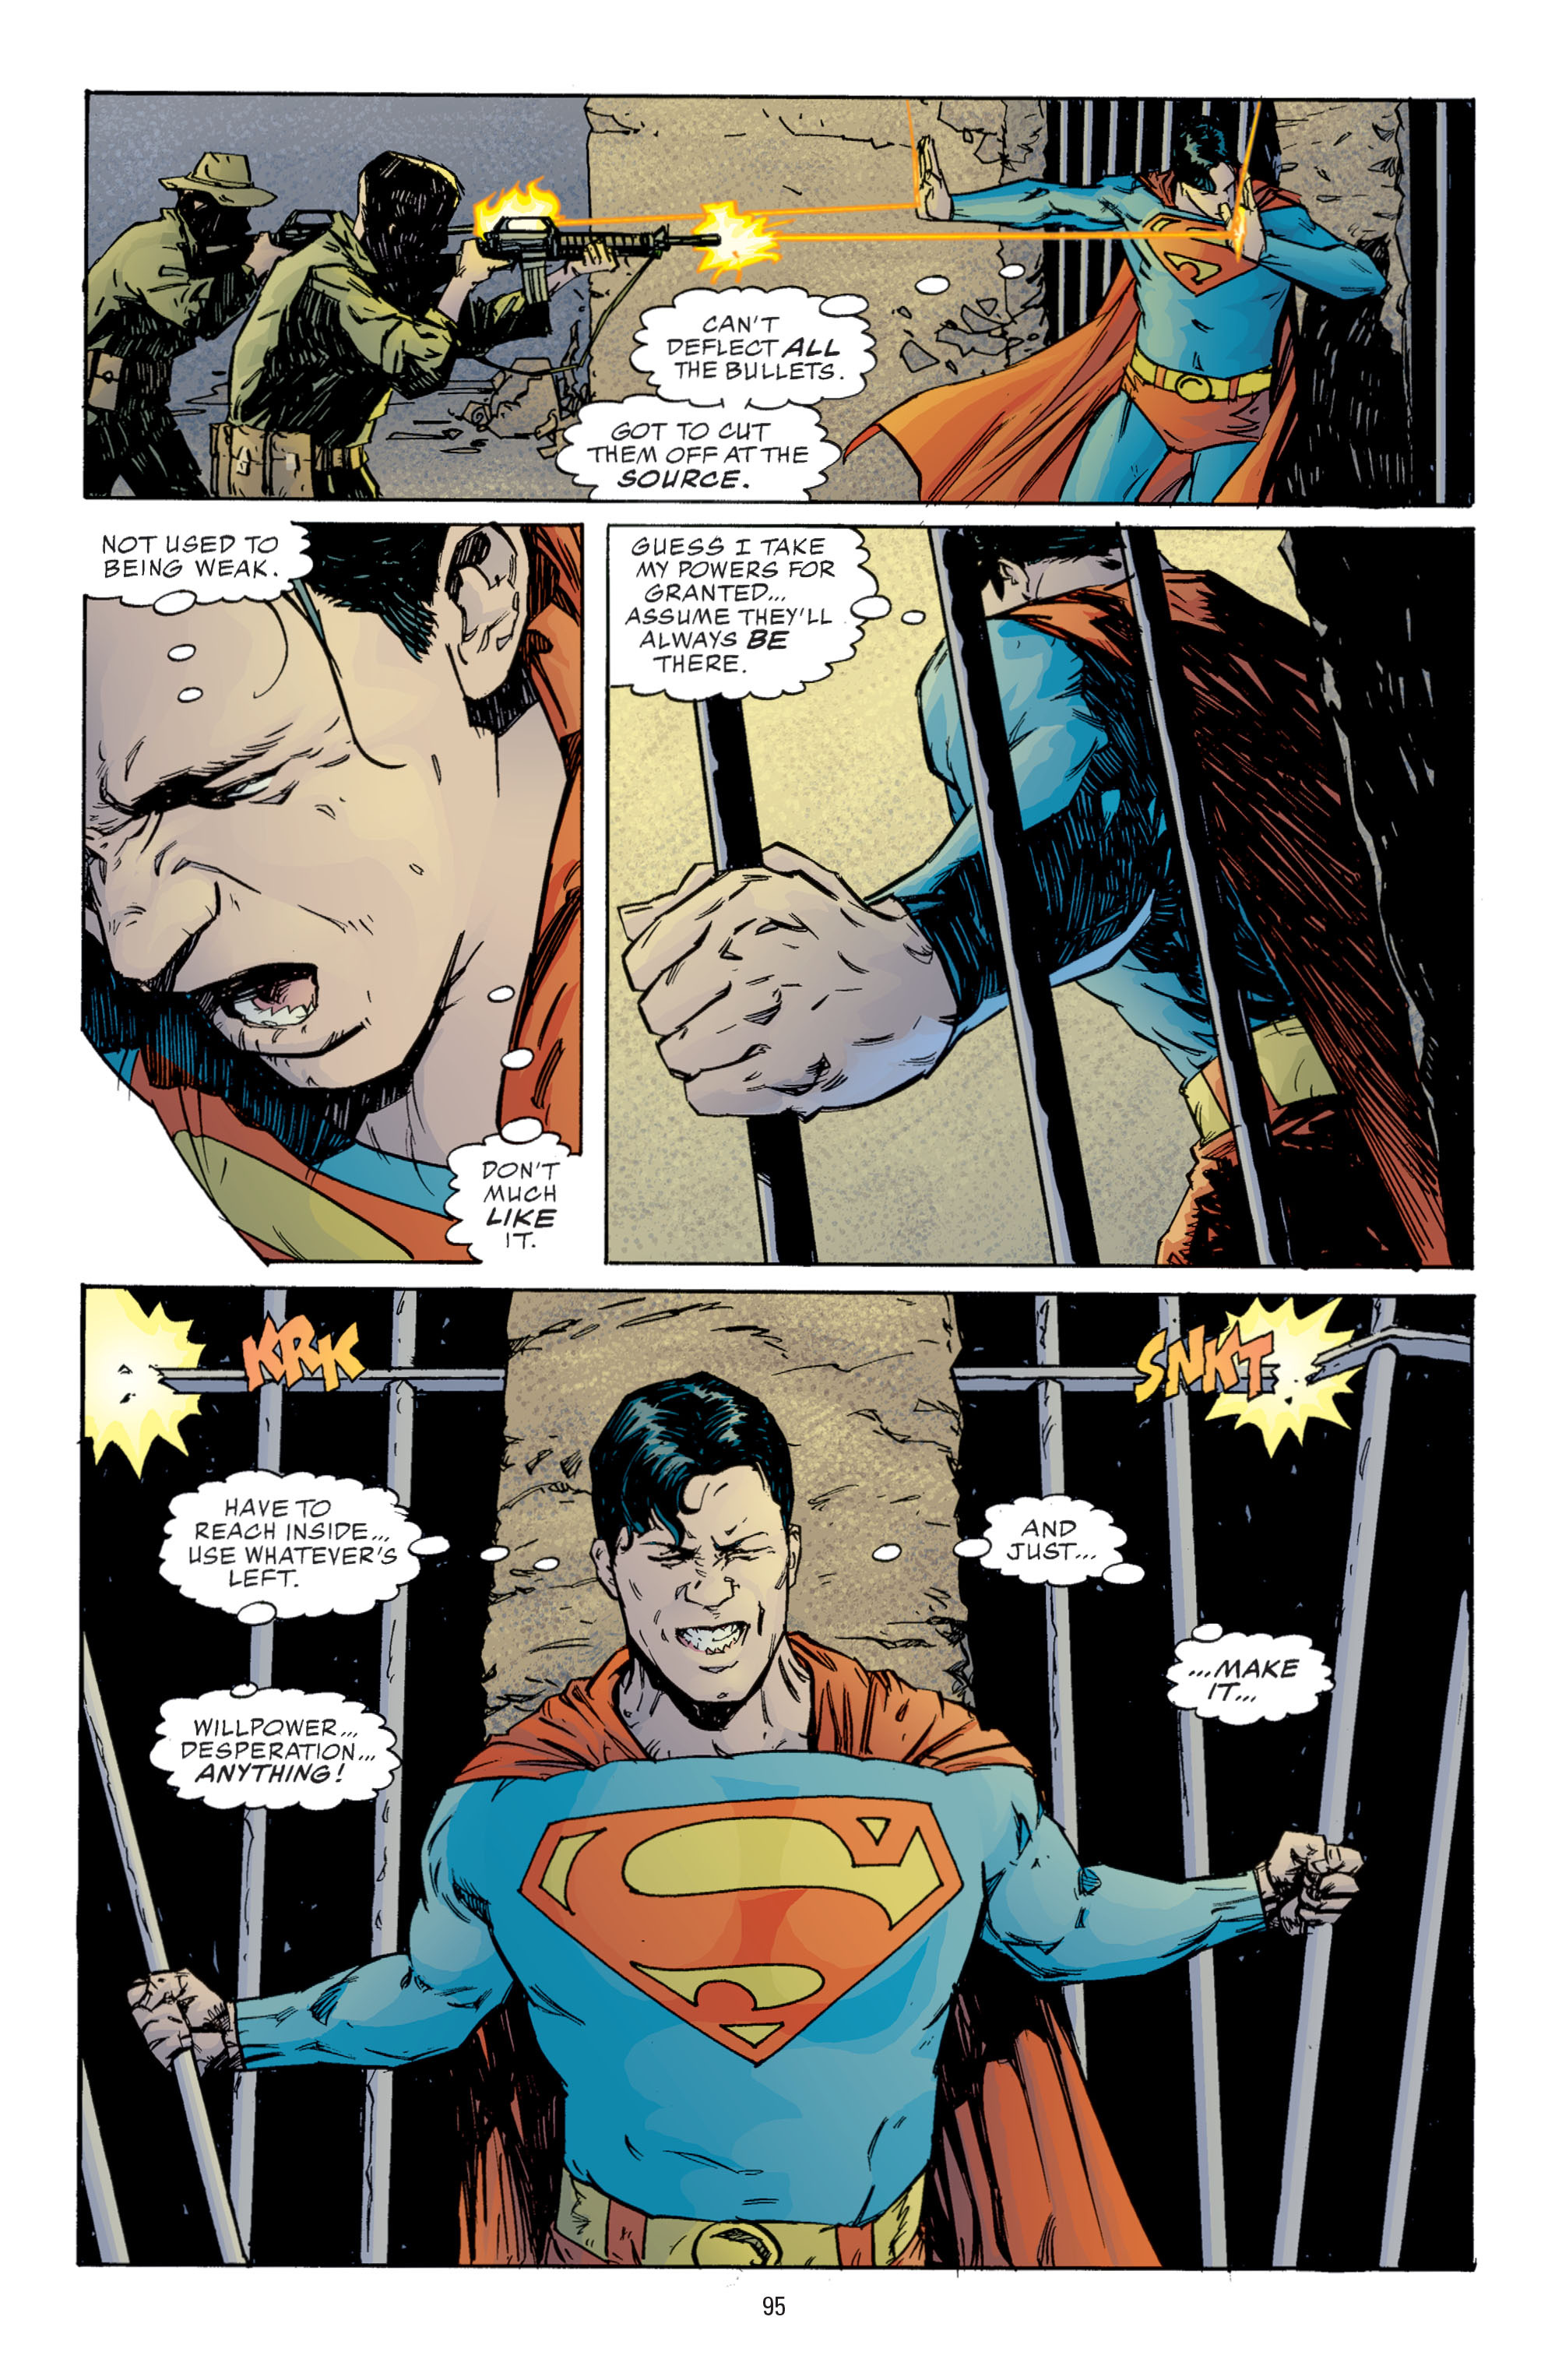 DC Comics/Dark Horse Comics: Justice League Full #1 - English 93